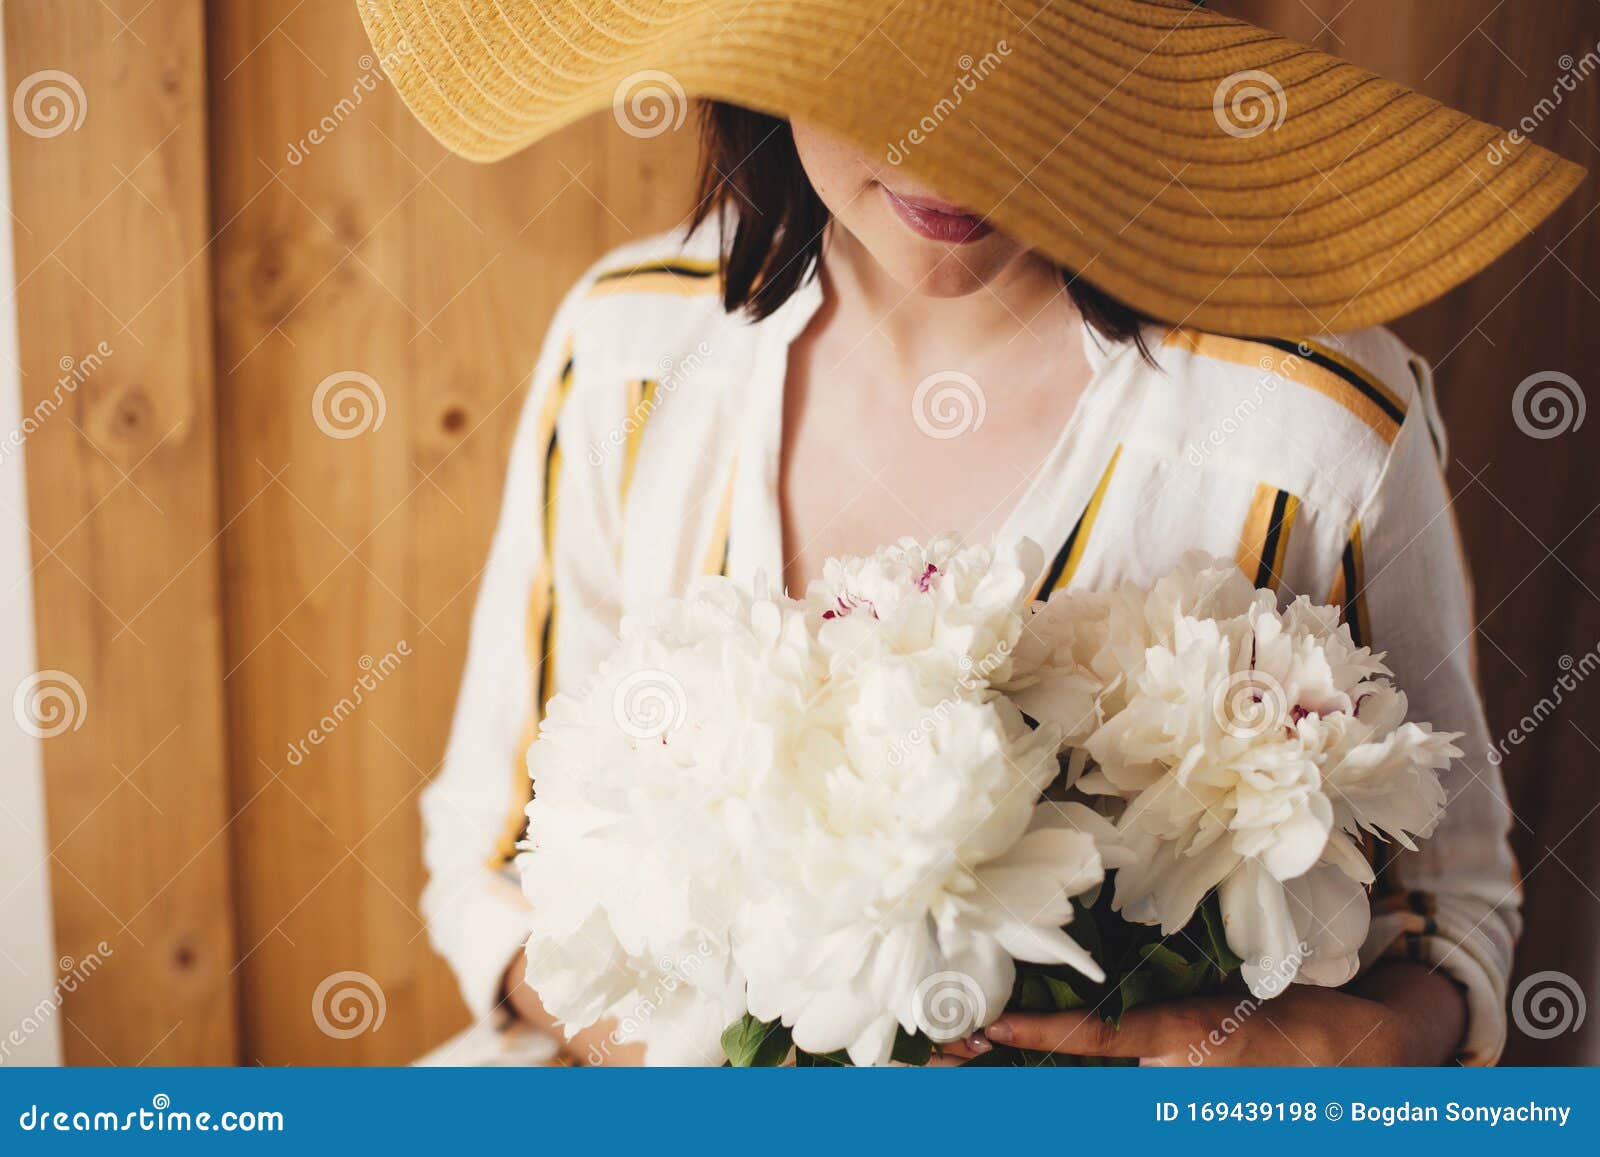 乡村木背景上戴白牡丹花帽的婆婆画像时尚潮人女孩 穿着库存照片 图片包括有时尚潮人女孩 穿着 乡村木背景上戴白牡丹花帽的婆婆画像